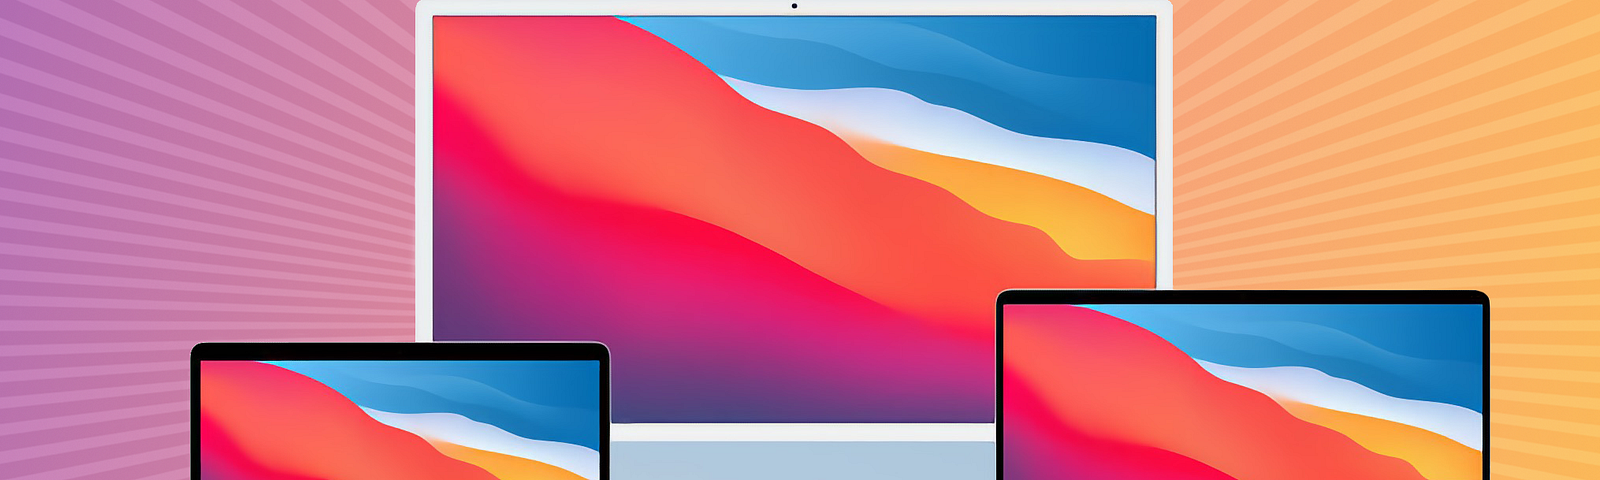 Mac renders from Apple’s website